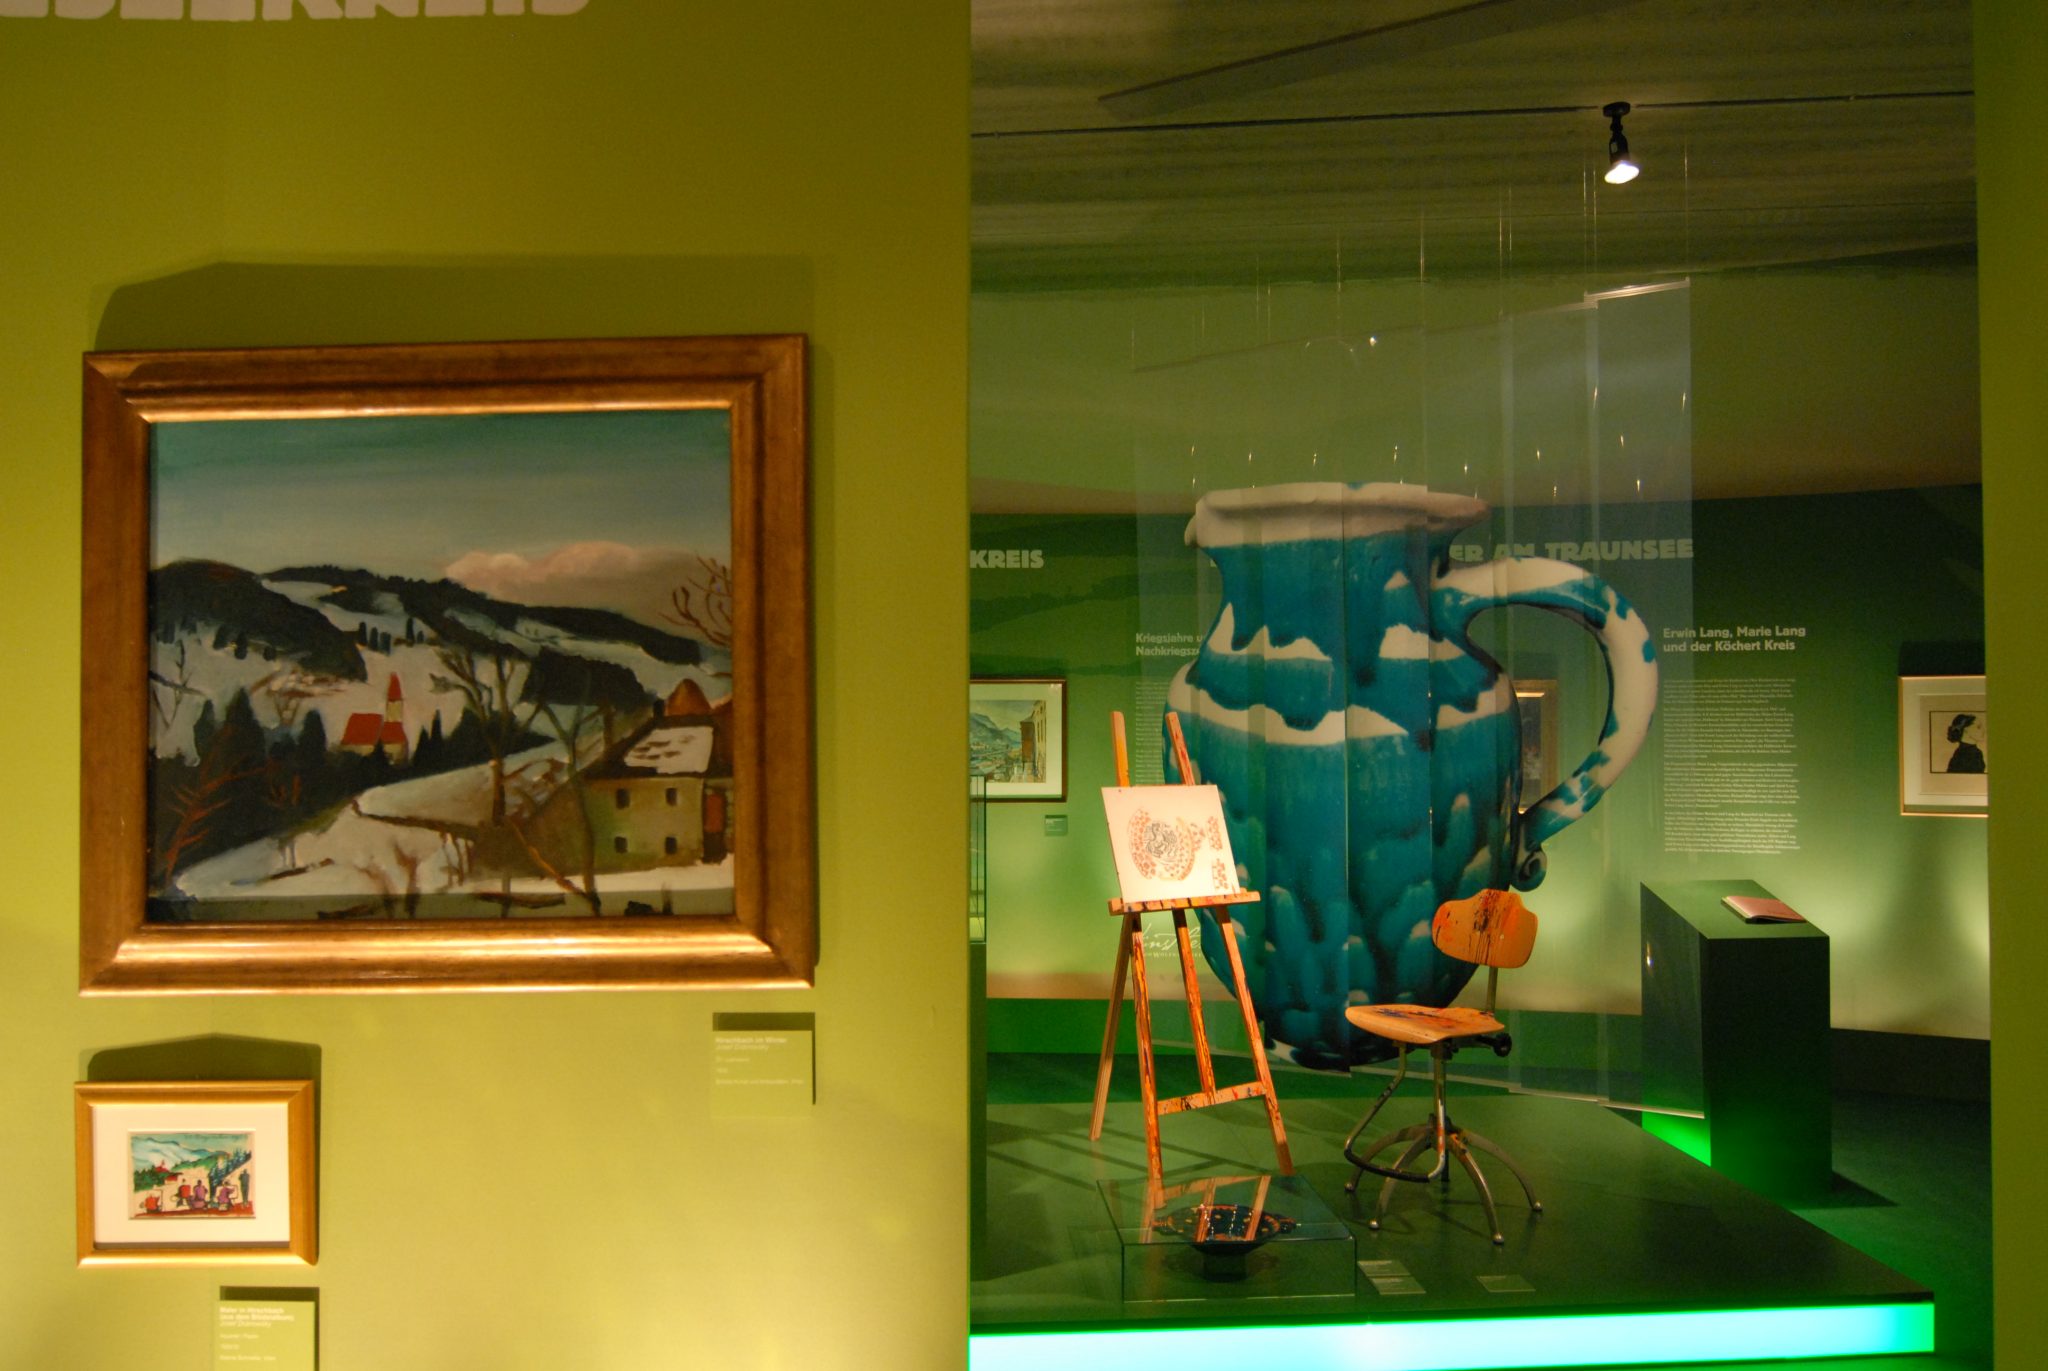 Künstlerkreise: links Gemälde, rechts Inszenierung Staffelei mit antikem Drehstuhl und Gmundner Keramik Krug.